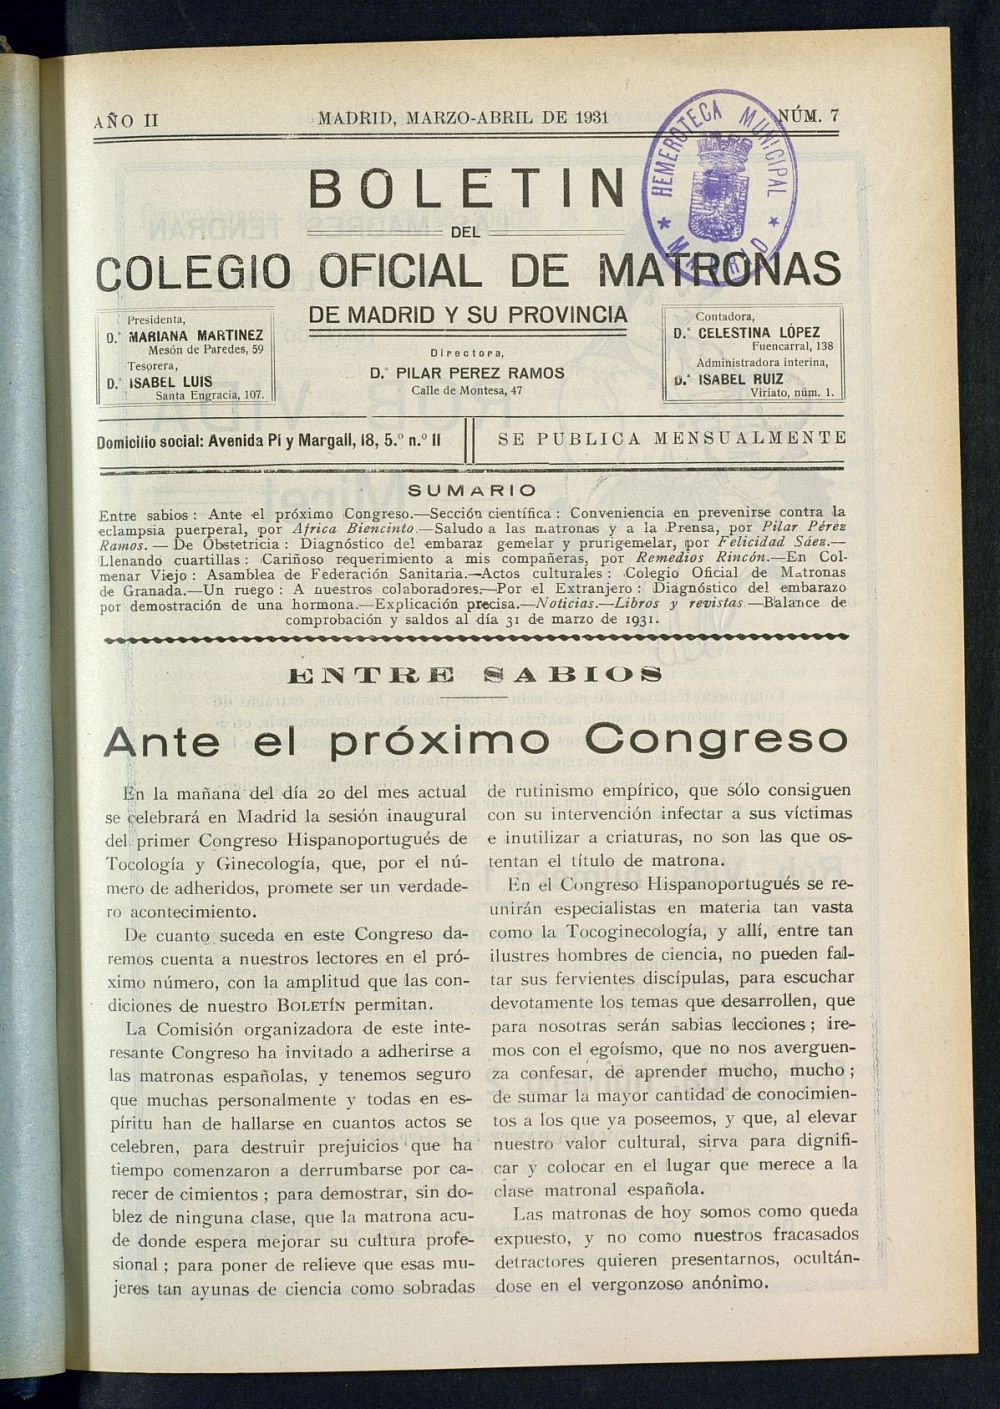 Boletn del Colegio Oficial de Matronas de Madrid y su Provincia de marzo-abril de 1931